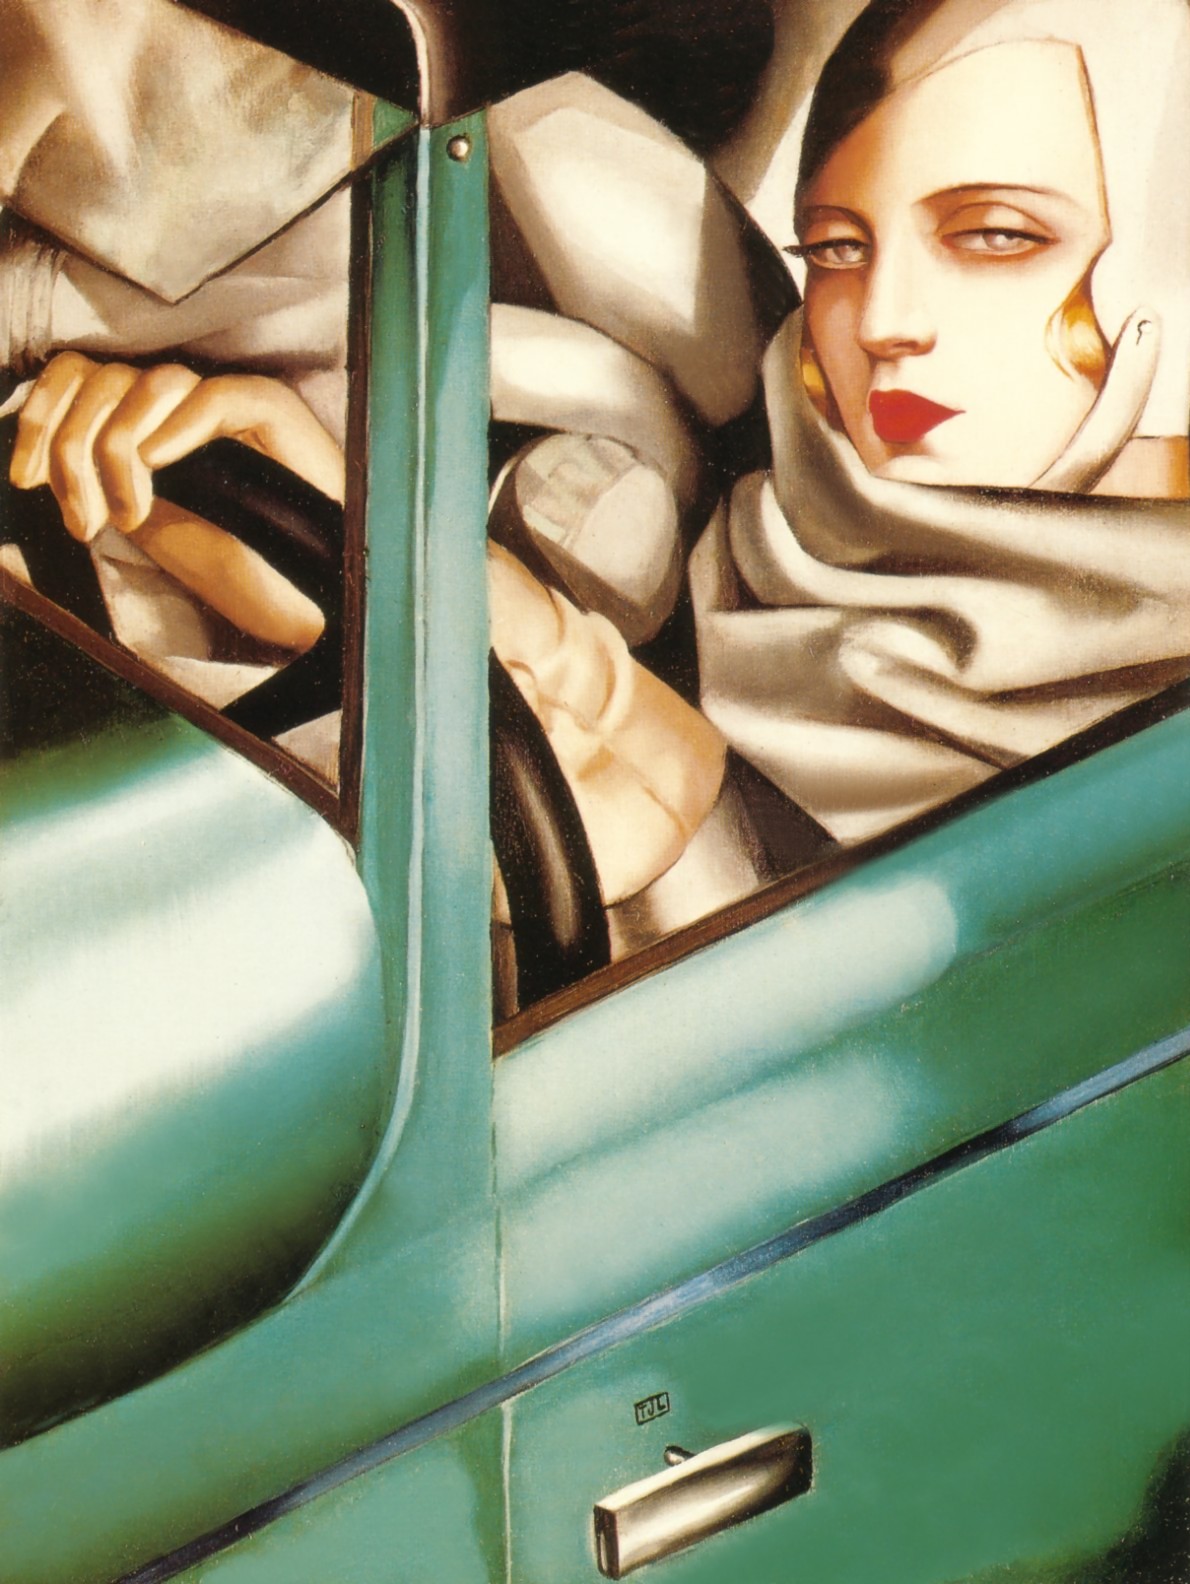 綠色布加迪中的自畫像 by Tamara de Lempicka - 1925 - 35 x 26 釐米 